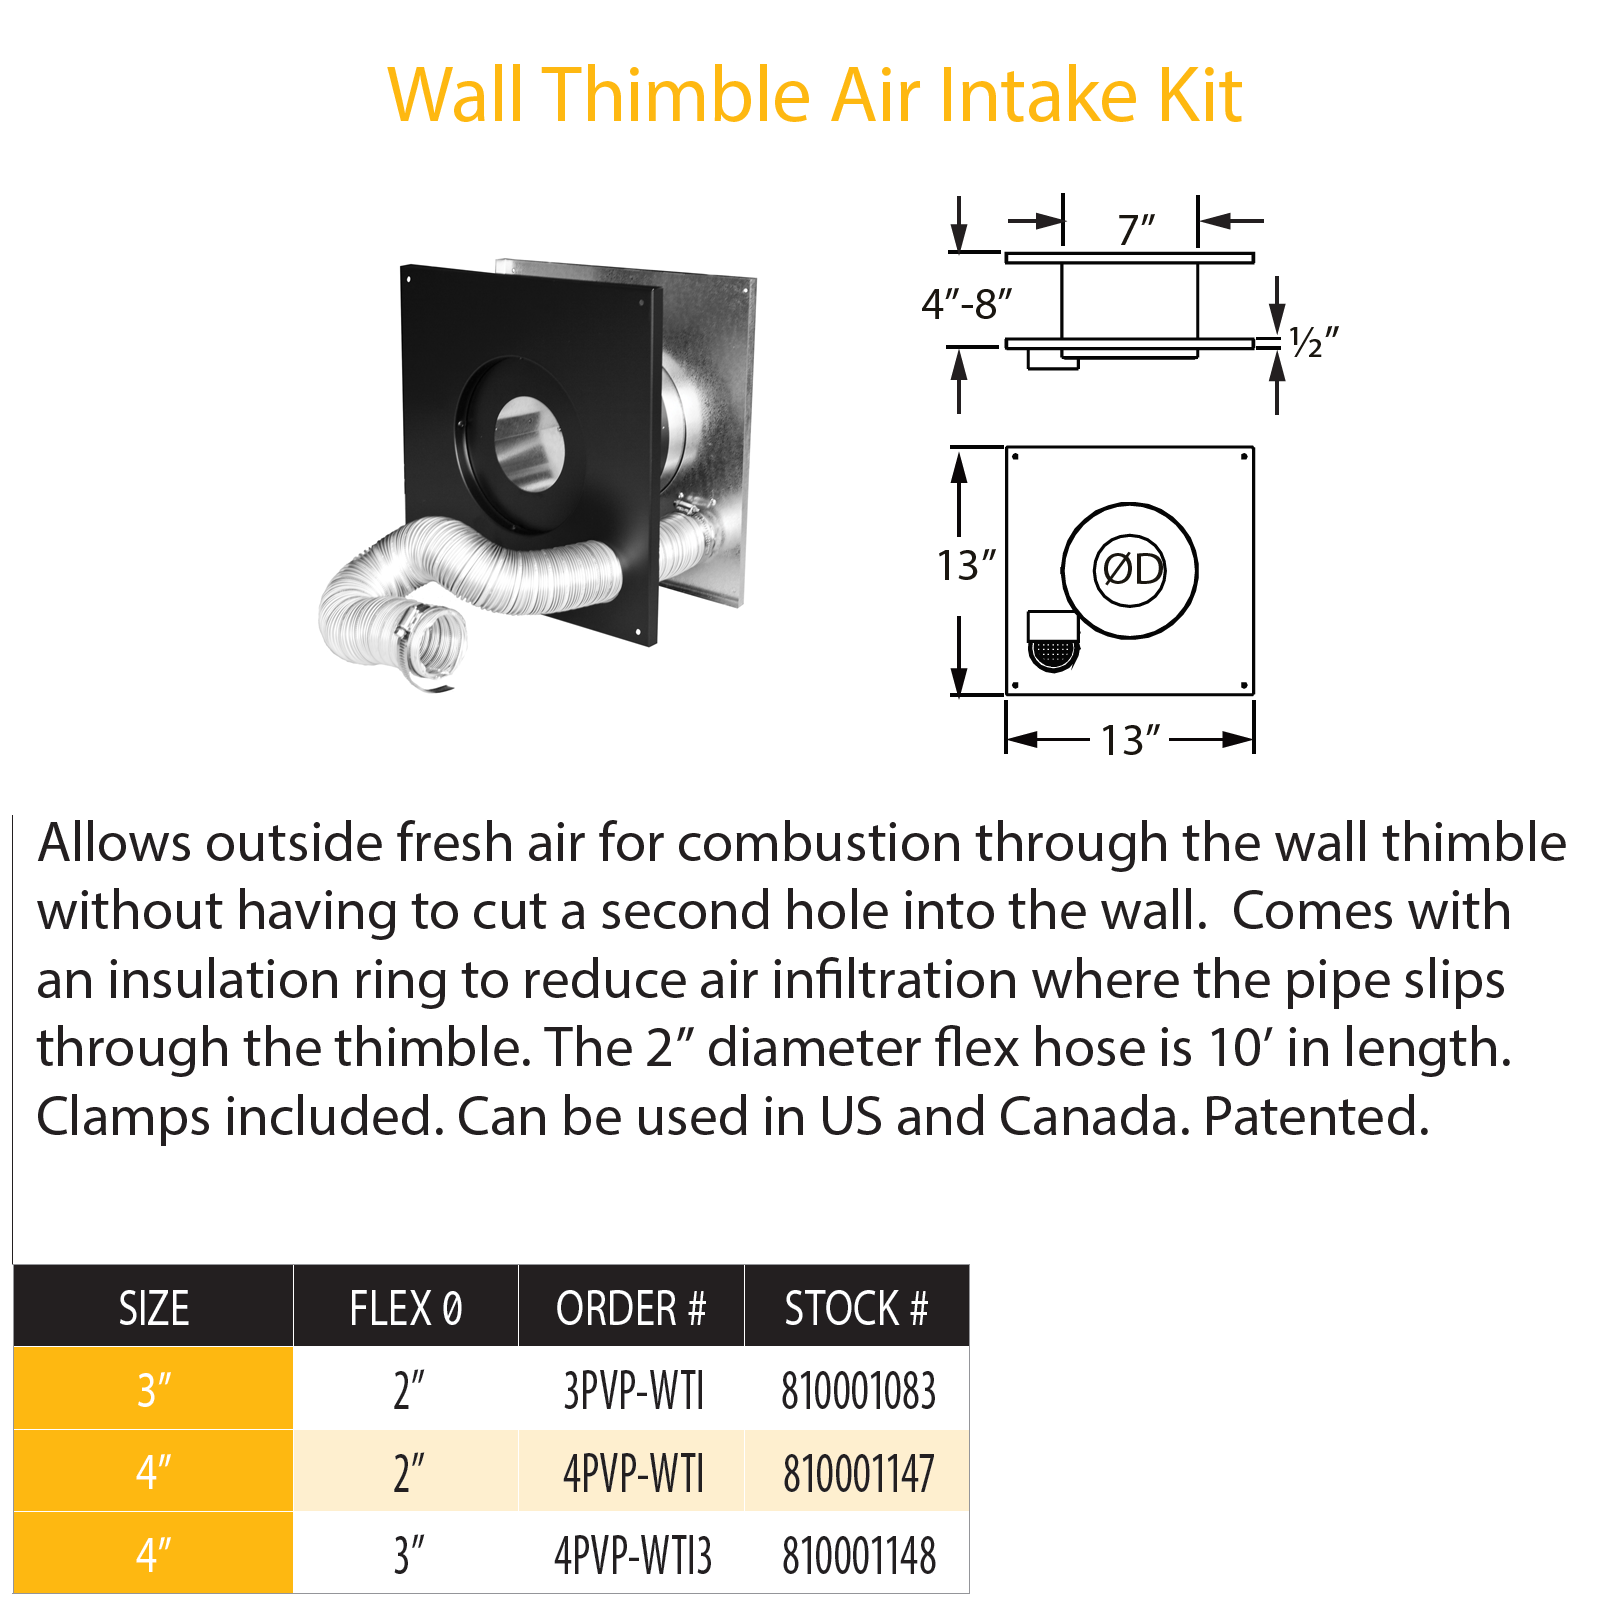 DuraVent Pellet Vent Pro 4" Wall Thimble Air Intake Kit | 4PVP-WTI